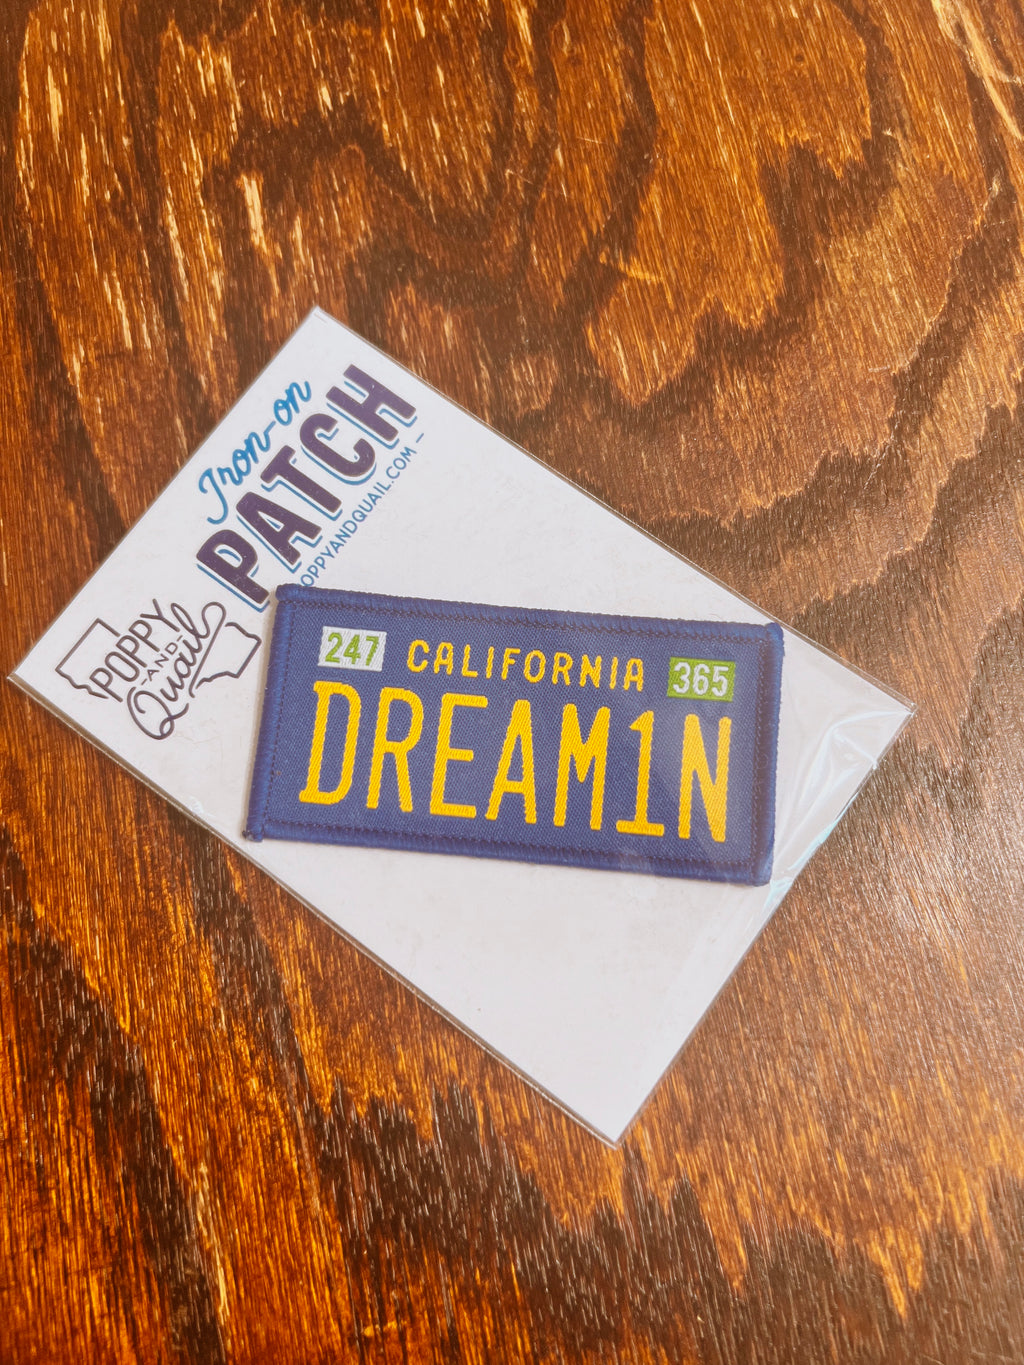 California Dream1n Patch-Blue